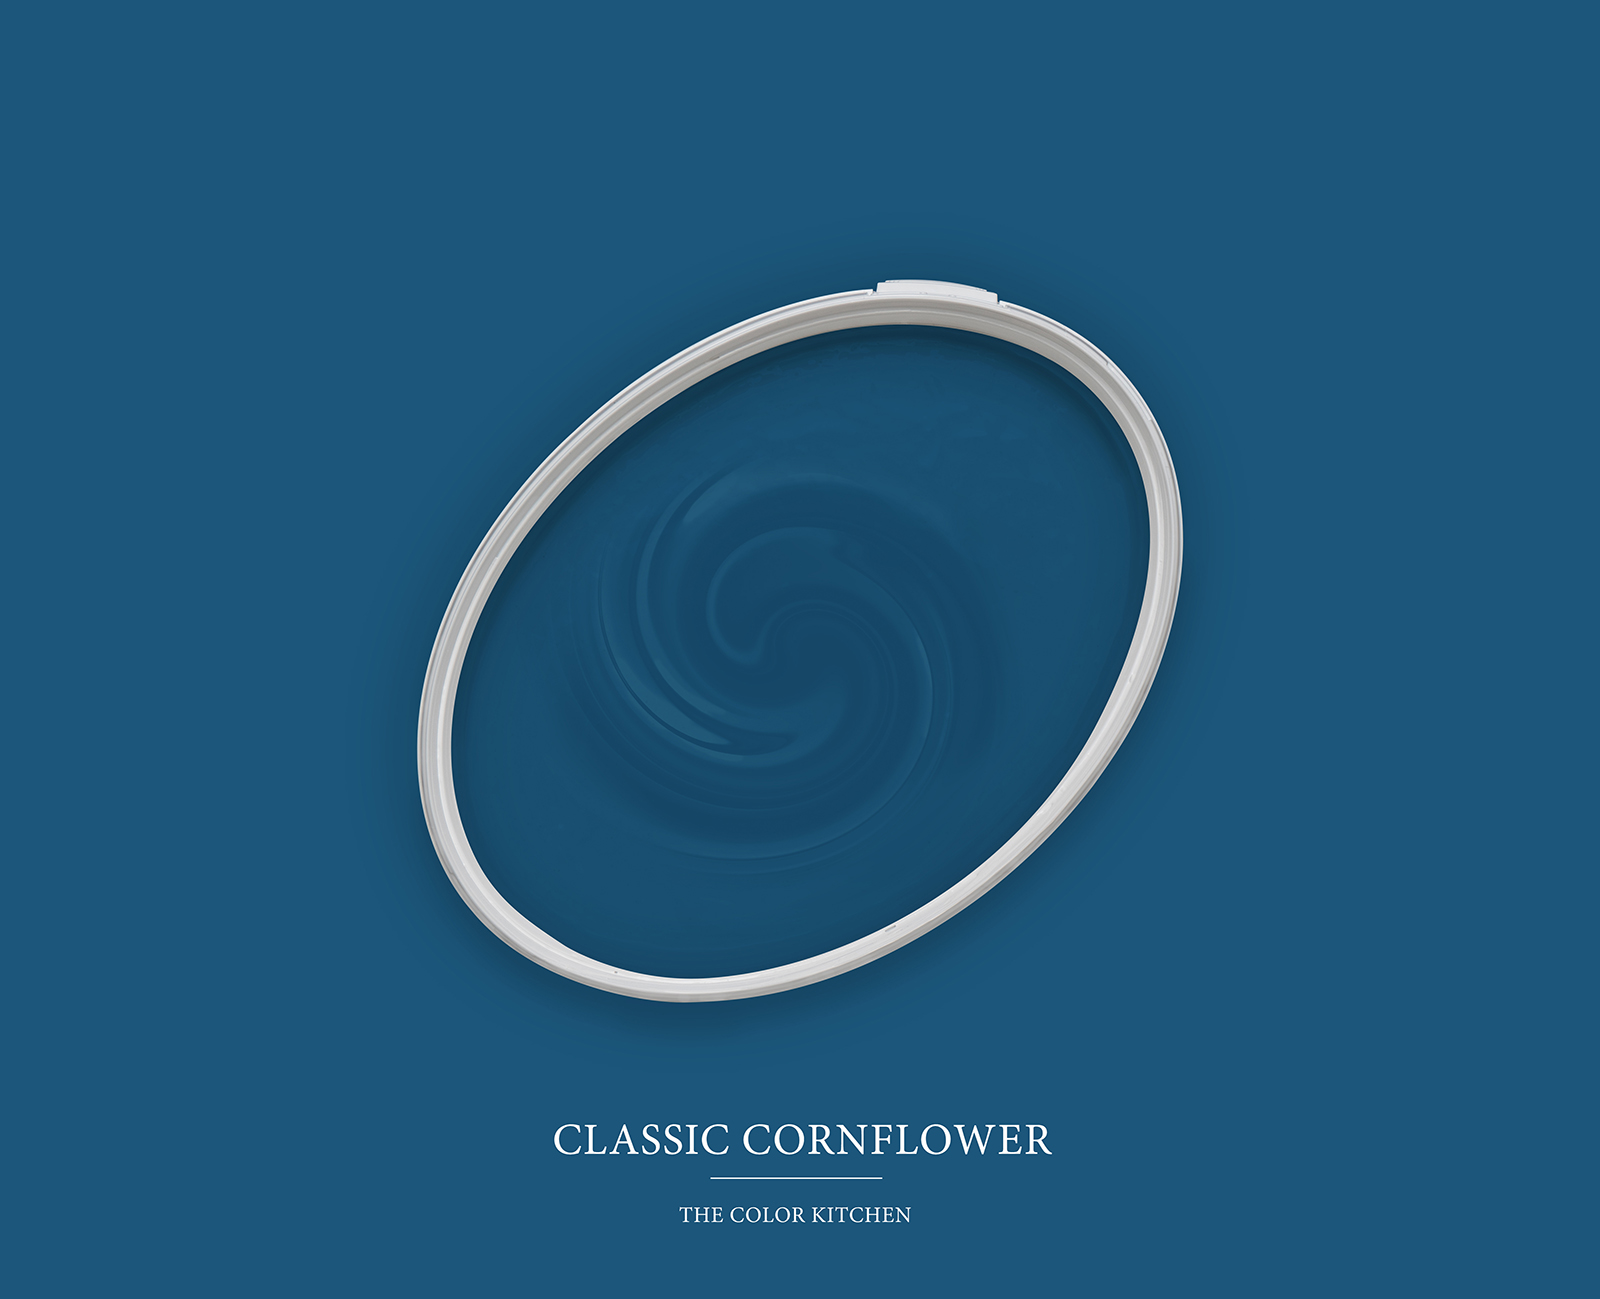         Wandfarbe TCK3005 »Classic Cornflower« in intensivem Blau – 2,5 Liter
    